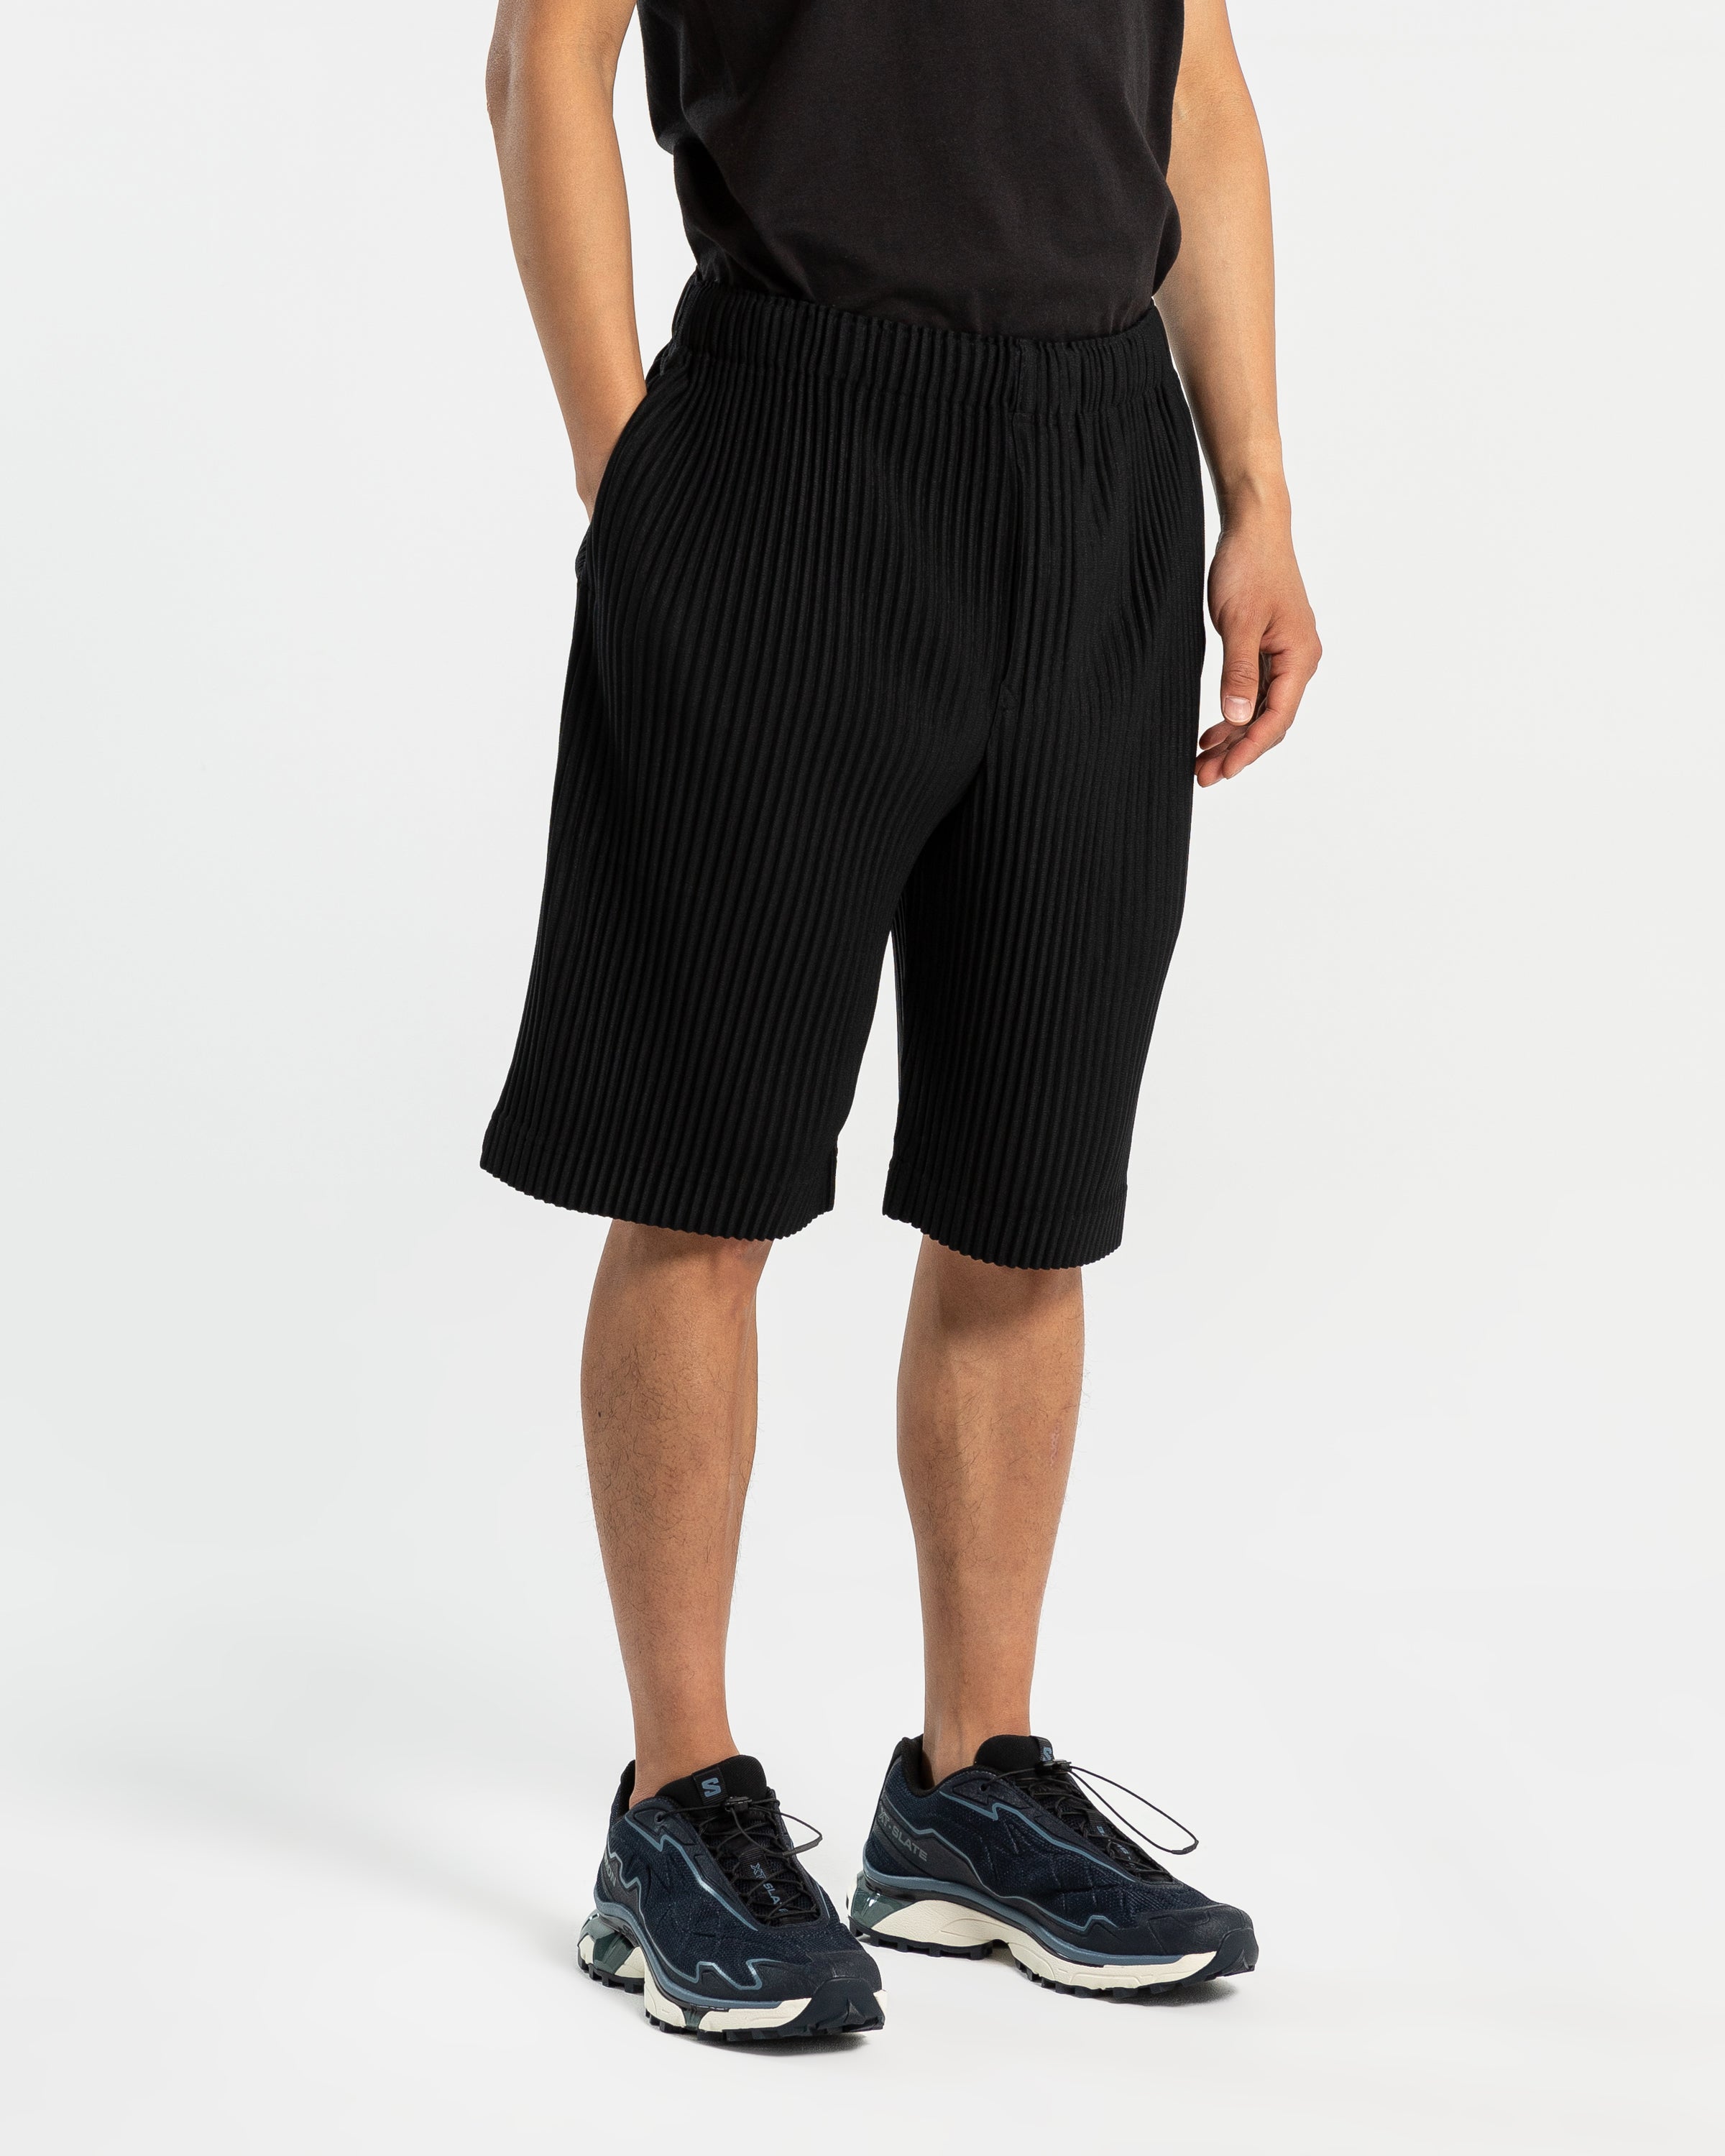 MC May Shorts in Black